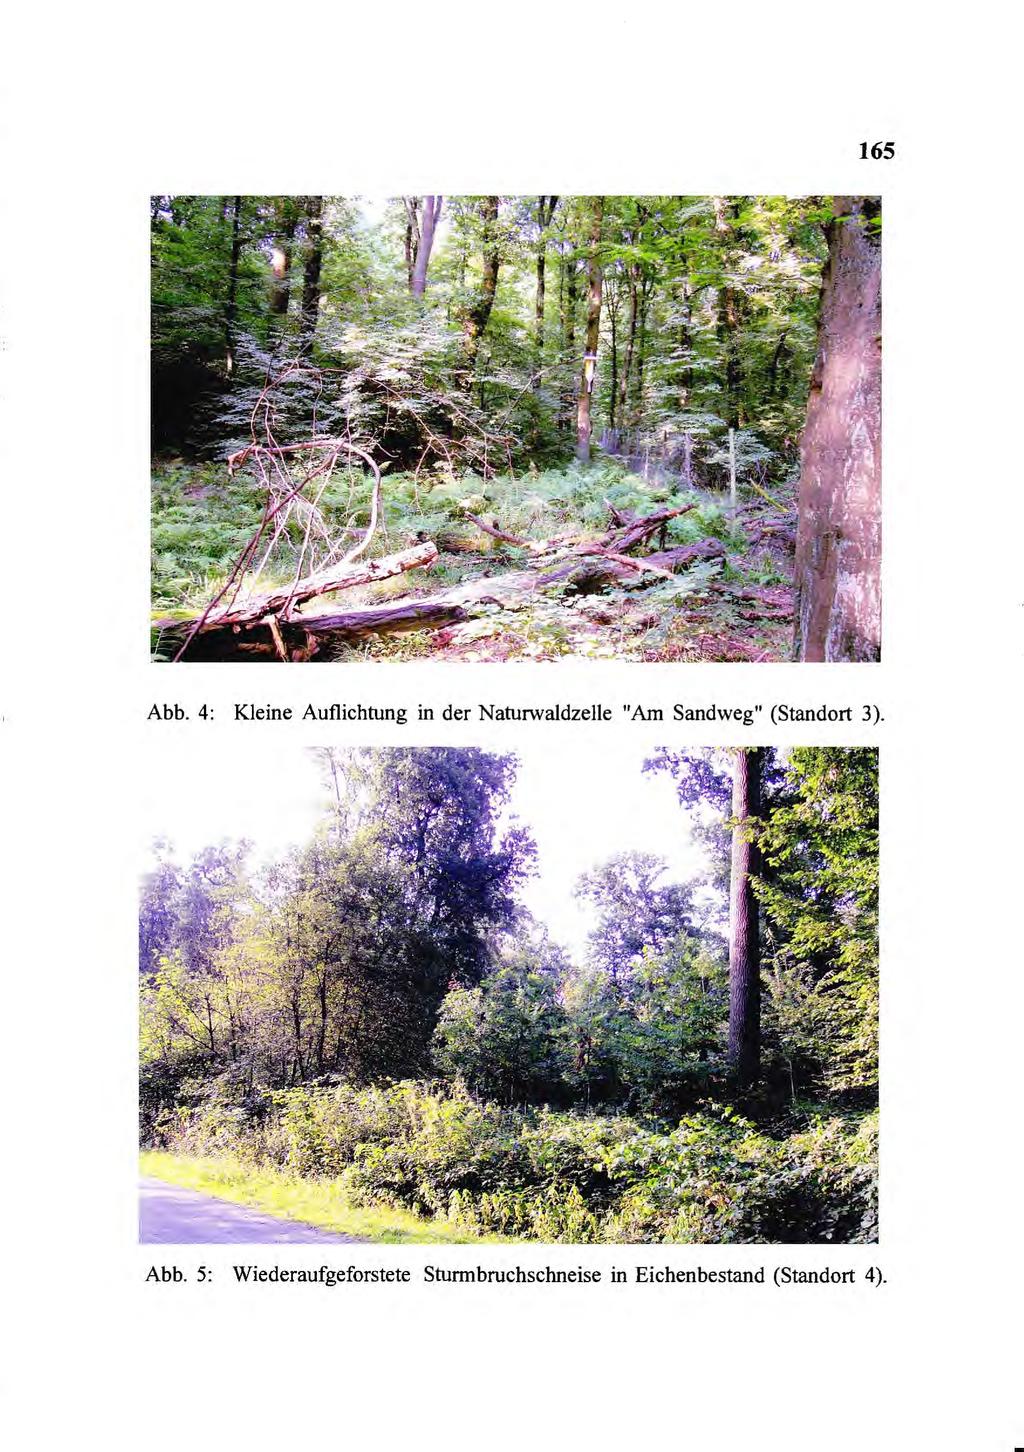 65 Abb. 4: Kleine Auflichtung in der Naturwaldzelle "Am Sandweg" (Standort 3).